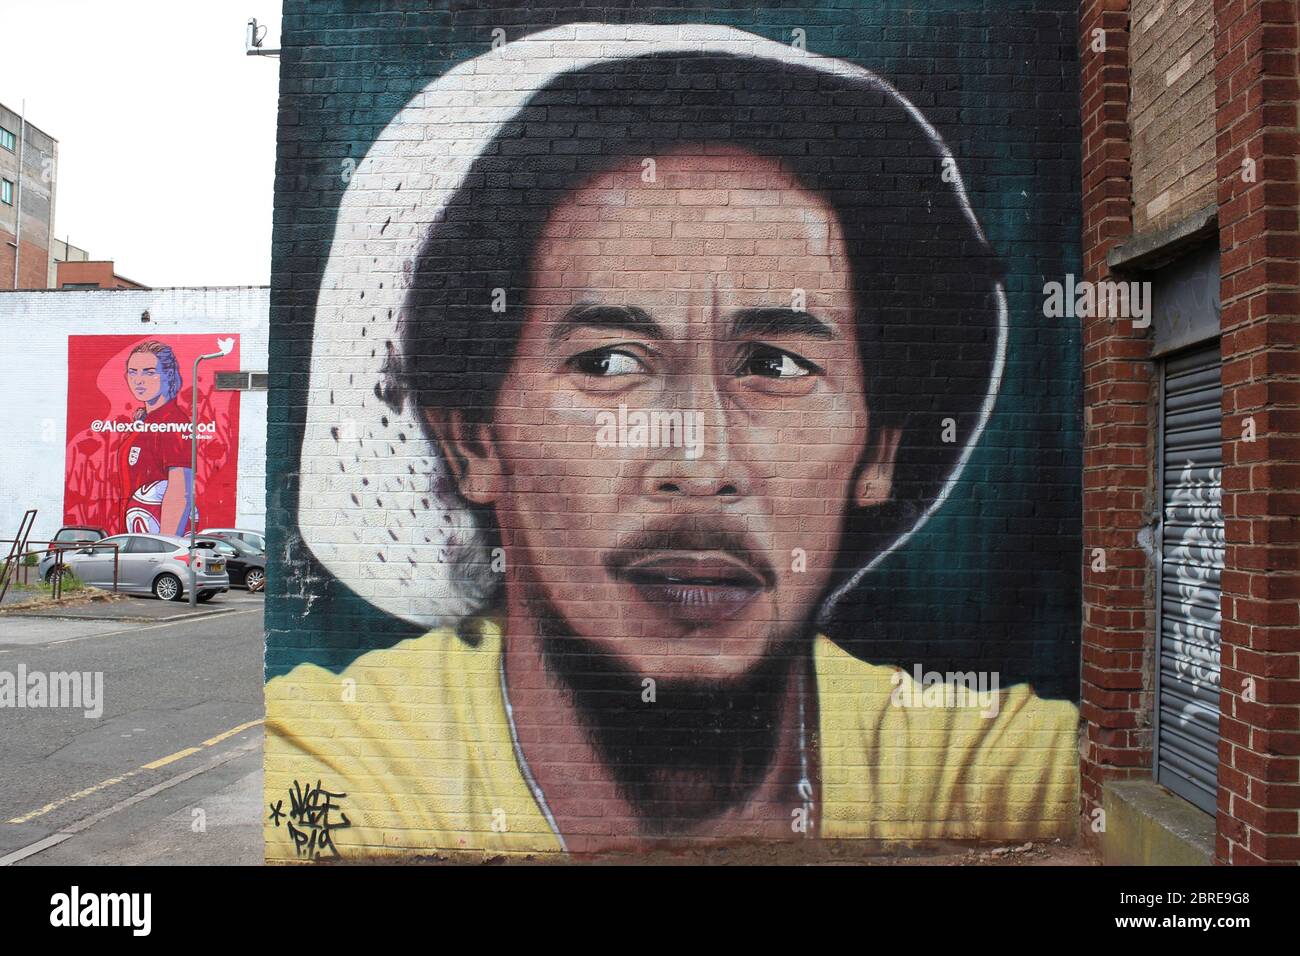 Portrait of Bob Marley von der französischen Künstlerin Akse - Graffiti von Alex Greenwood im Background Fabric District, Liverpool, UK Stockfoto